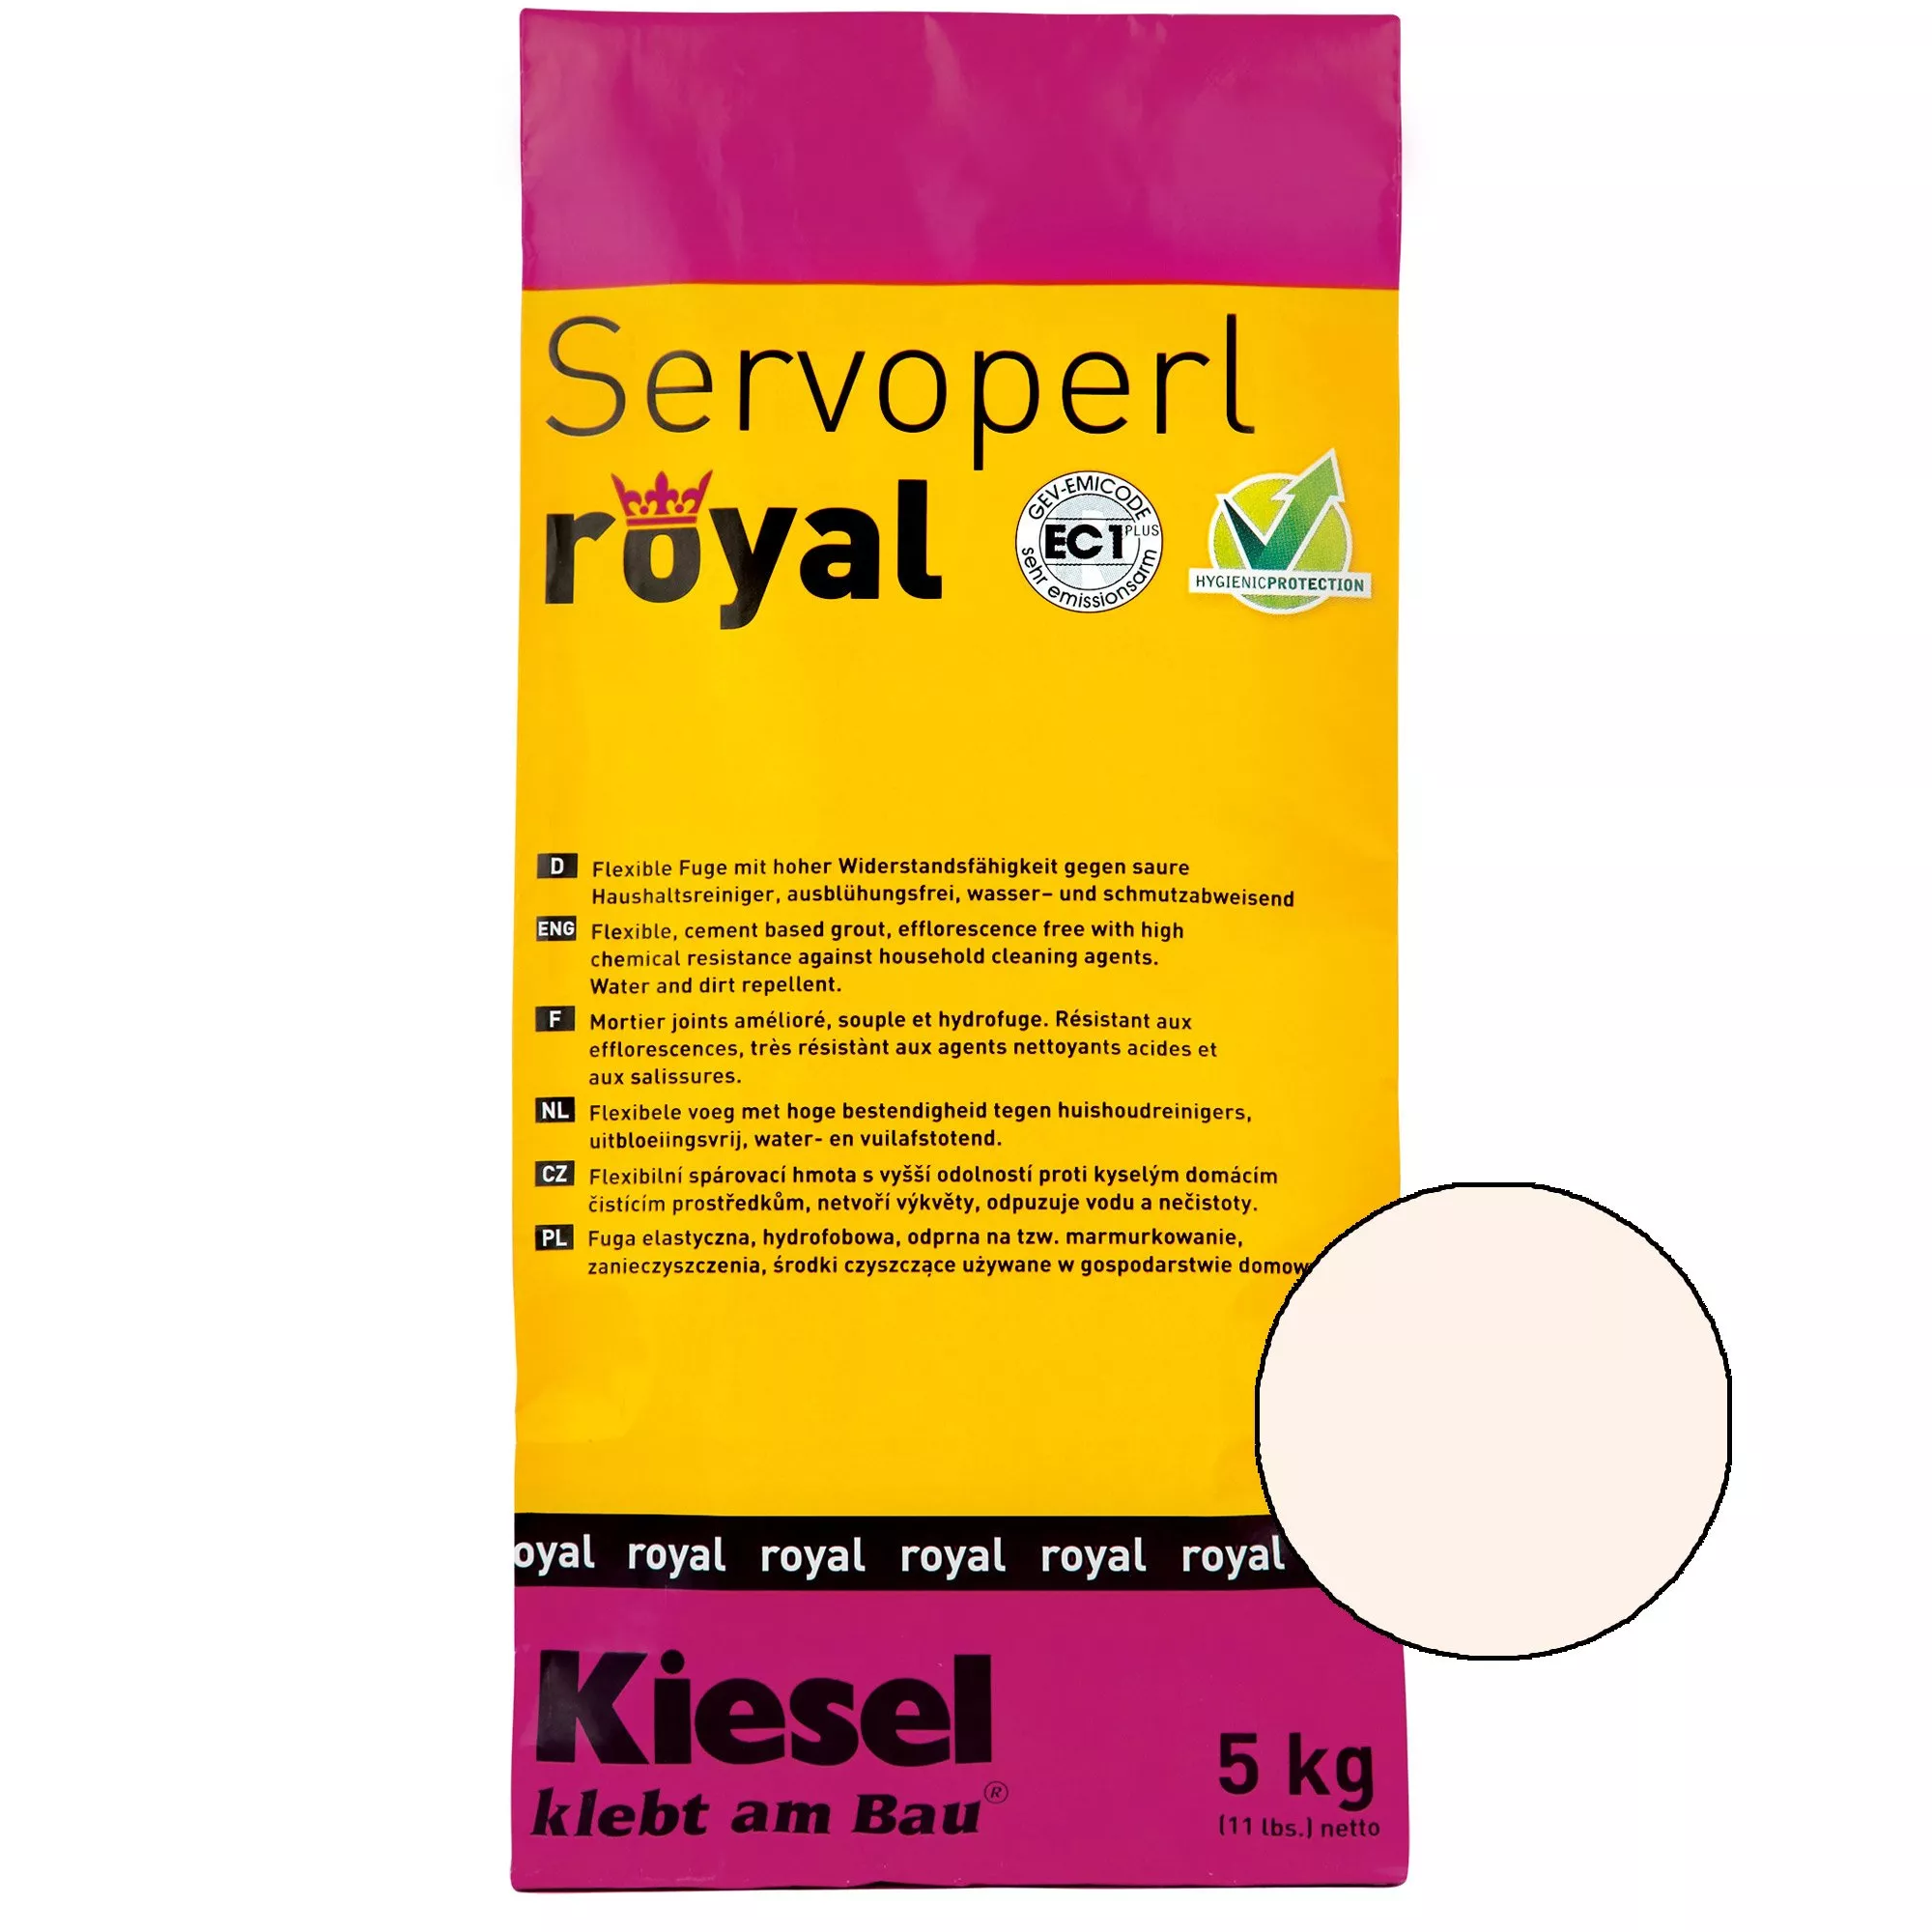 Kiesel Servoperl royal - смес за фуги - 5 кг Пергамон